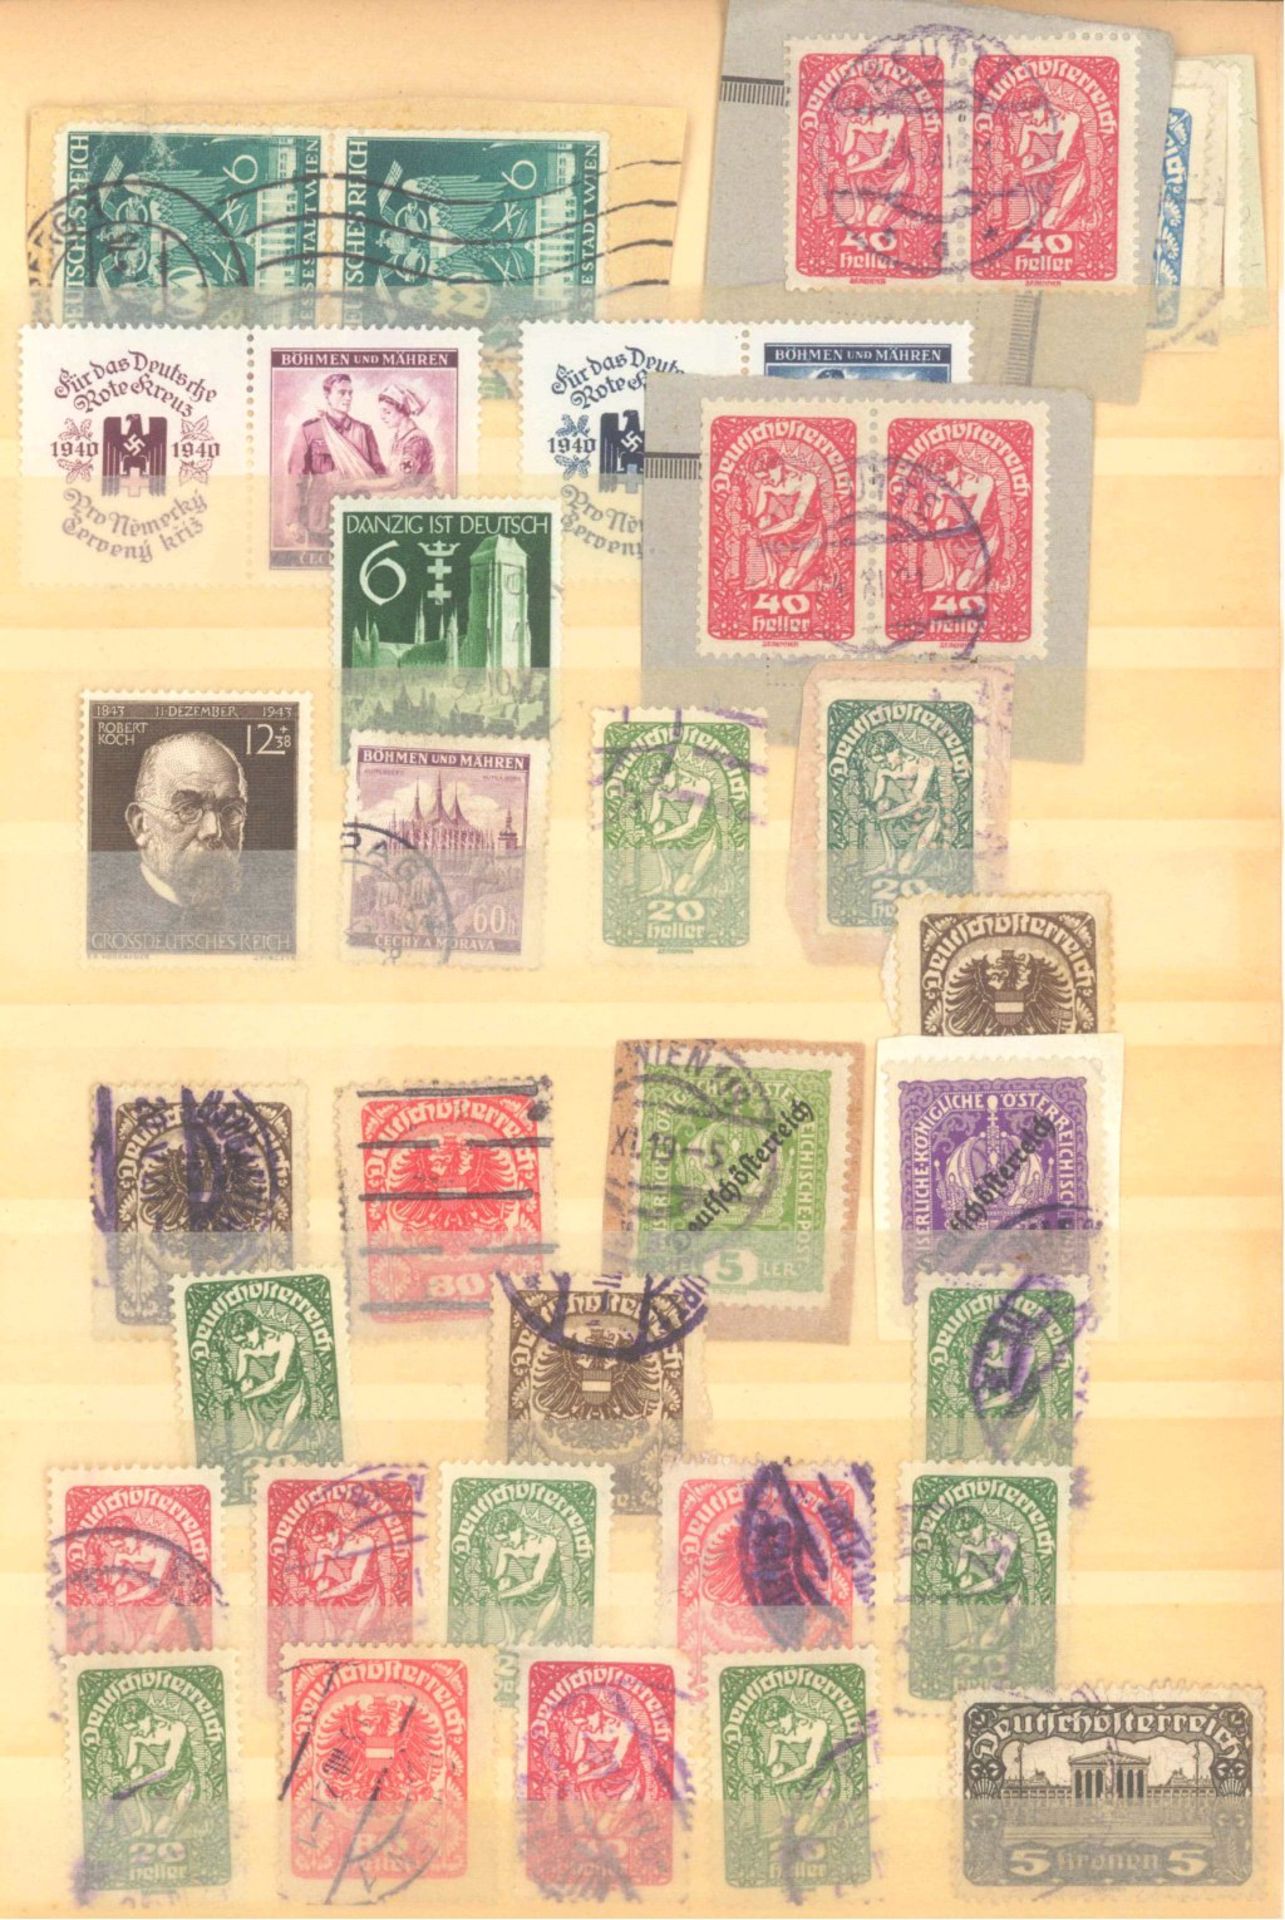 FRANKENTHALER NACHLASSuriger Nachlass mit Briefmarken und Belegen. Dabei DeutschesReich, altes - Bild 21 aus 46